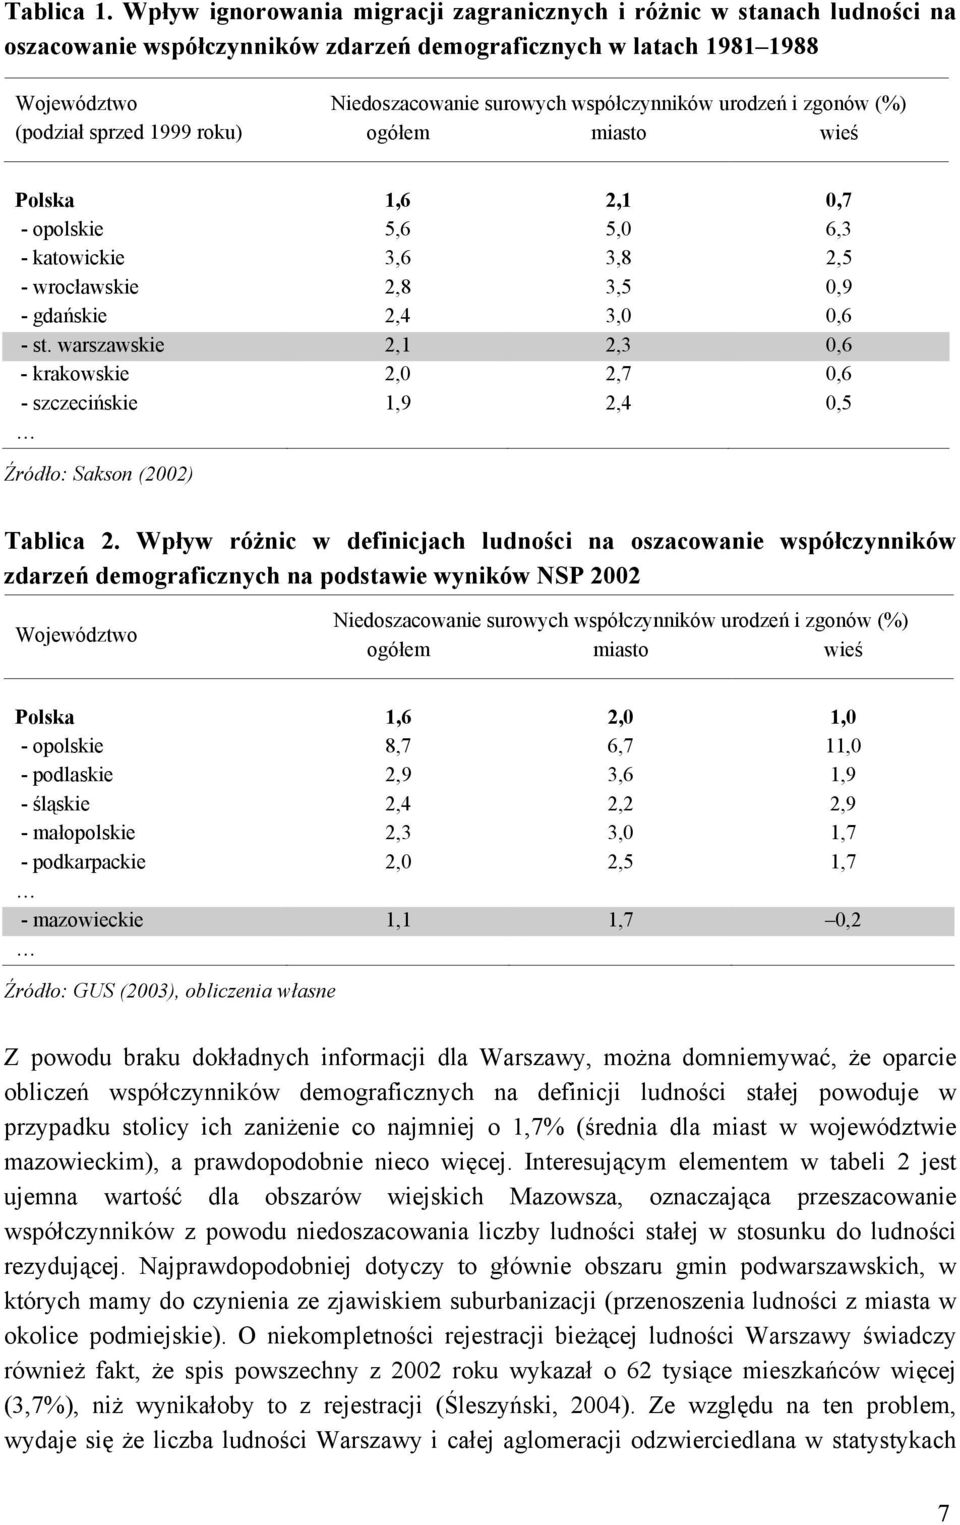 urodzeń i zgonów (%) (podział sprzed 1999 roku) ogółem miasto wieś Polska 1,6 2,1 0,7 - opolskie 5,6 5,0 6,3 - katowickie 3,6 3,8 2,5 - wrocławskie 2,8 3,5 0,9 - gdańskie 2,4 3,0 0,6 - st.